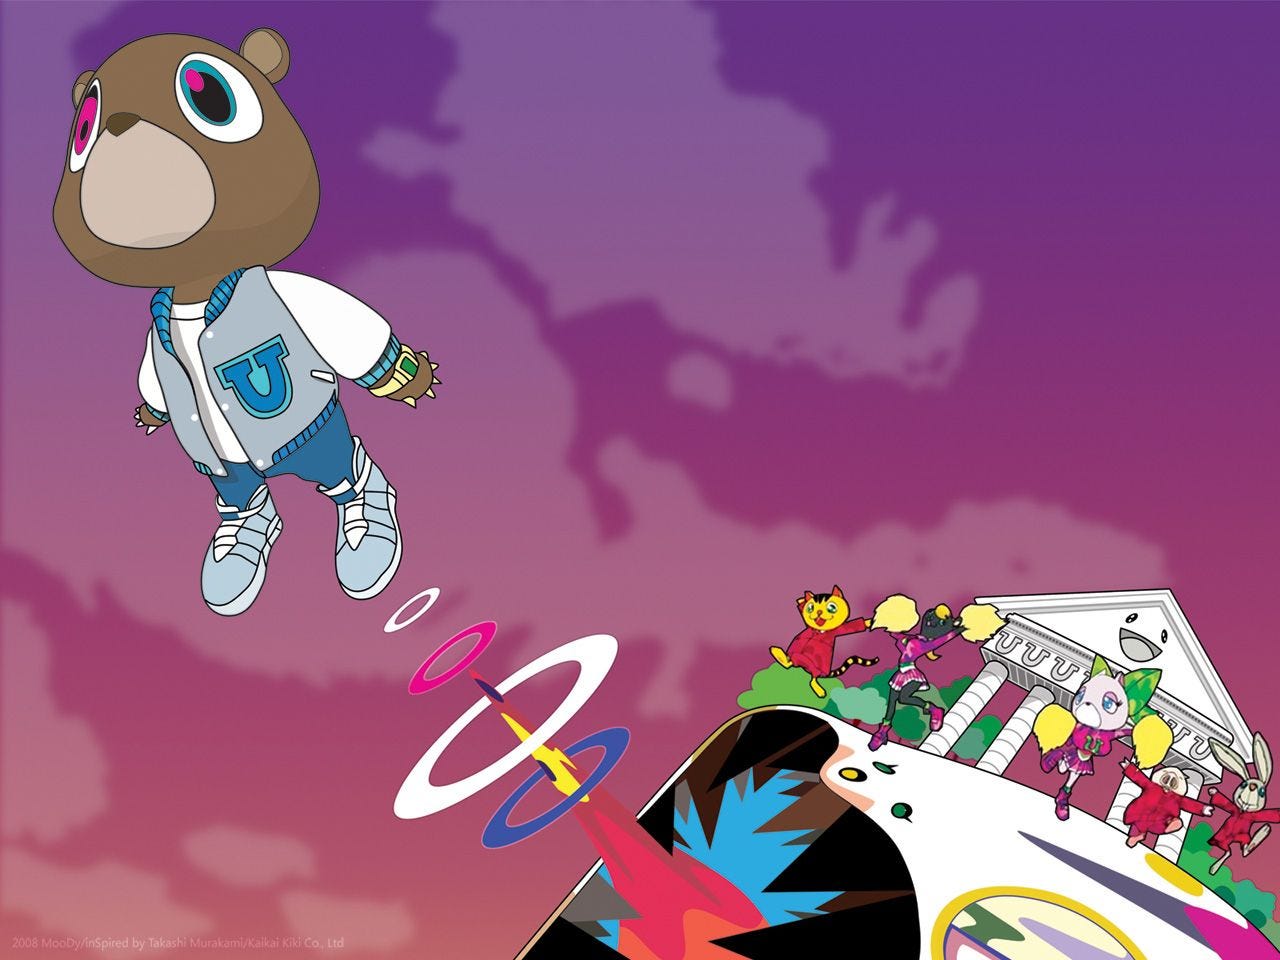 Everything I'm not. Kanye West's album 'Graduation' came up…